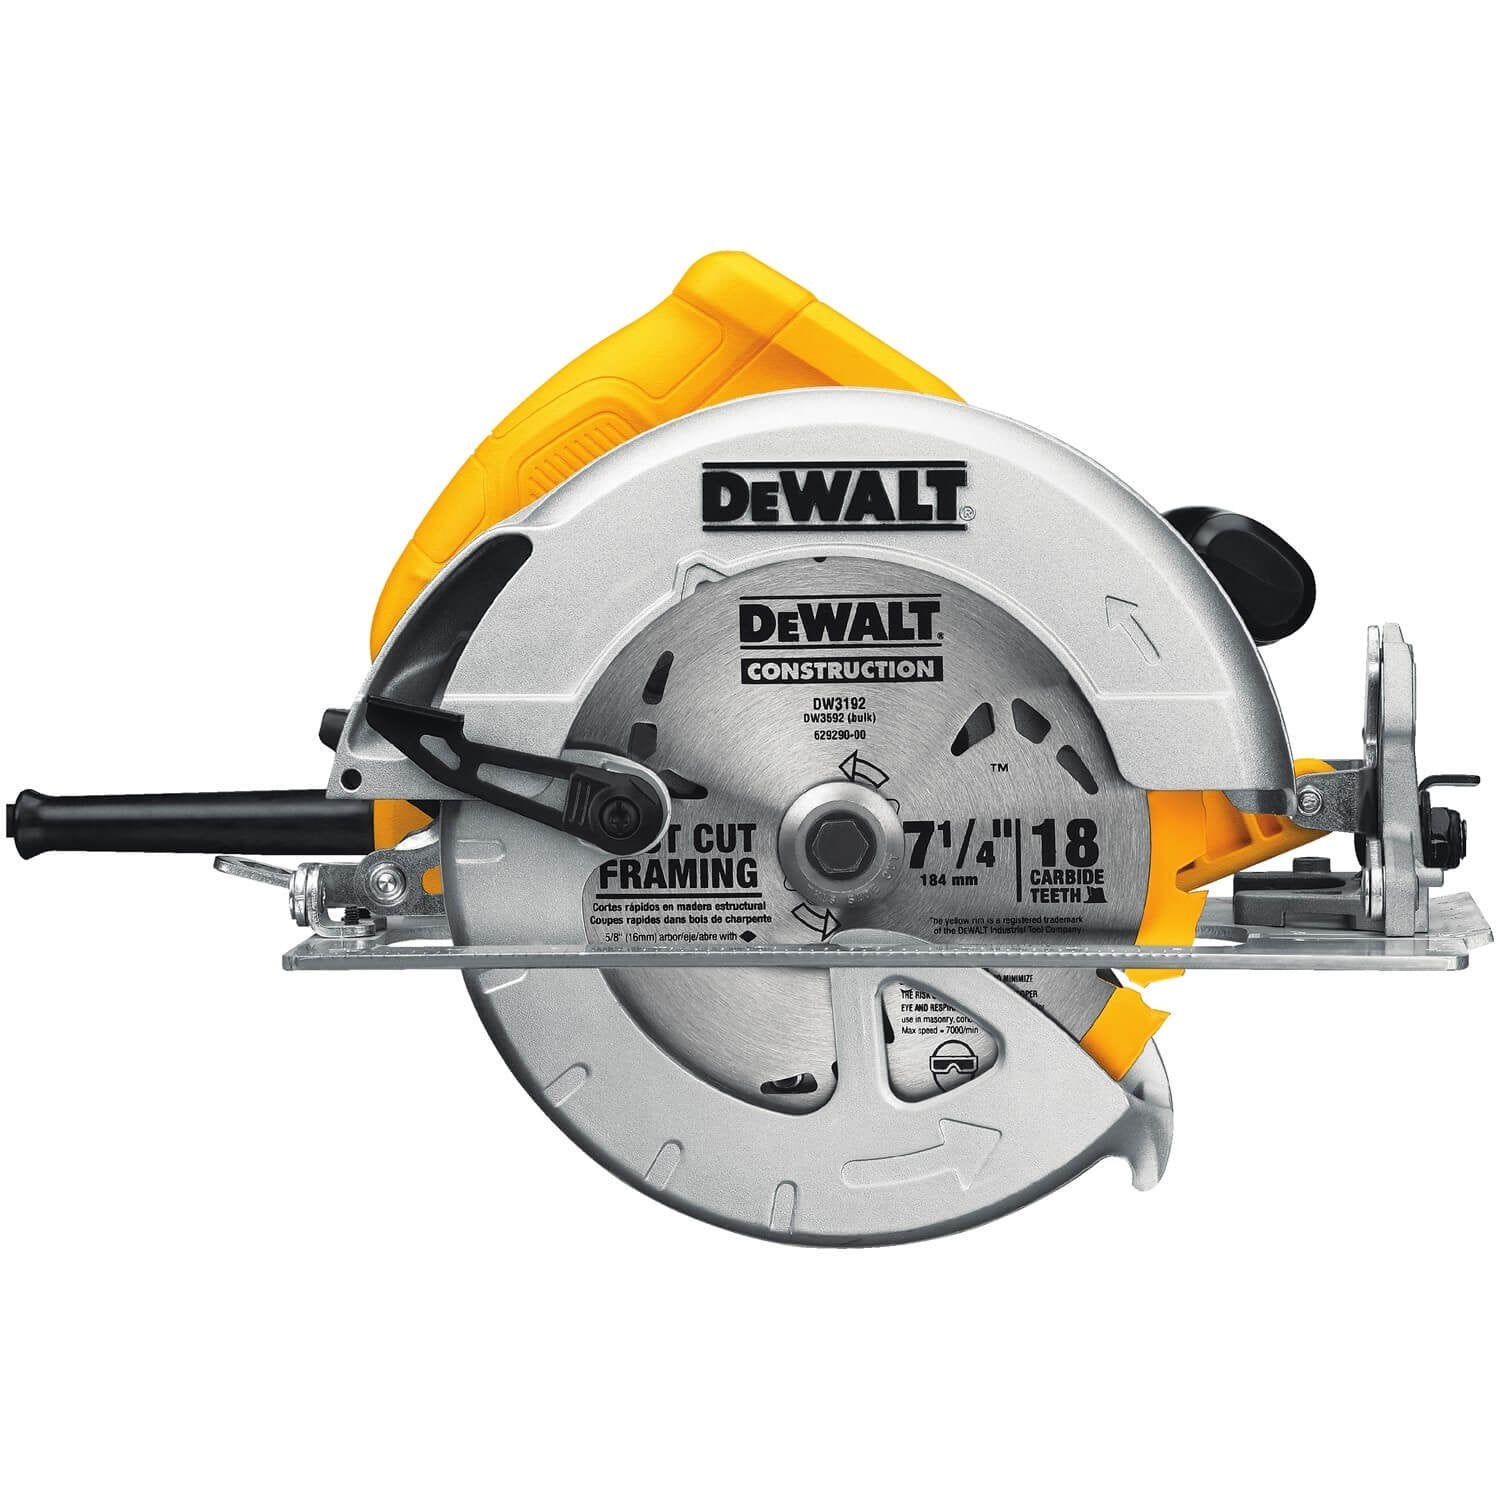 DEWALT DWE575 - 7-1/4-Inch Lightweight Circular Saw